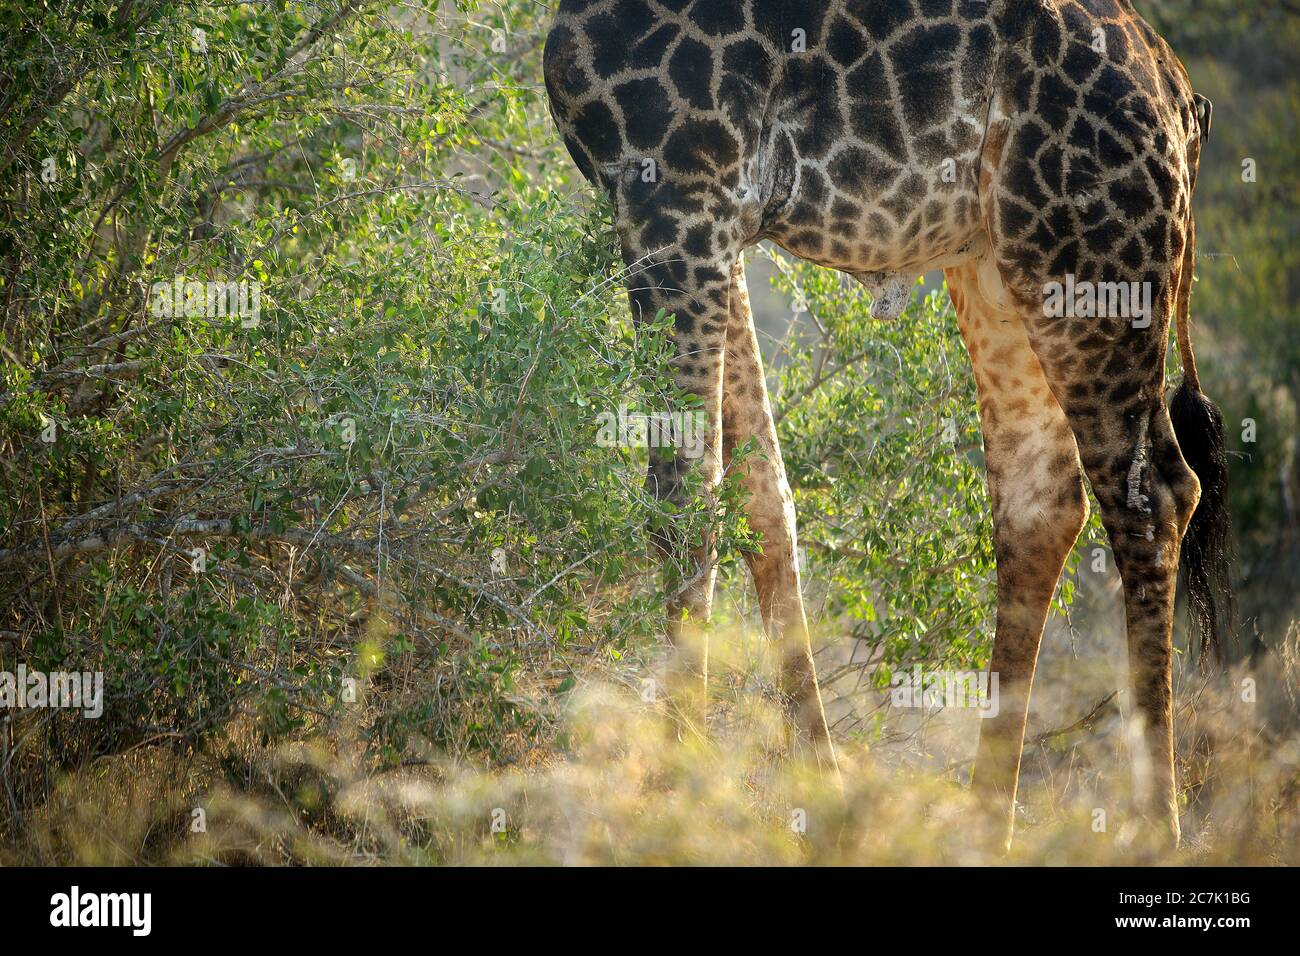 Girafe, Giraffa camelopardalis, dans le parc national Kruger, Afrique du Sud la girafe est un mammifère ungulé africain à bout égal, le plus grand animal terrestre vivant et le plus grand ruminant, Banque D'Images